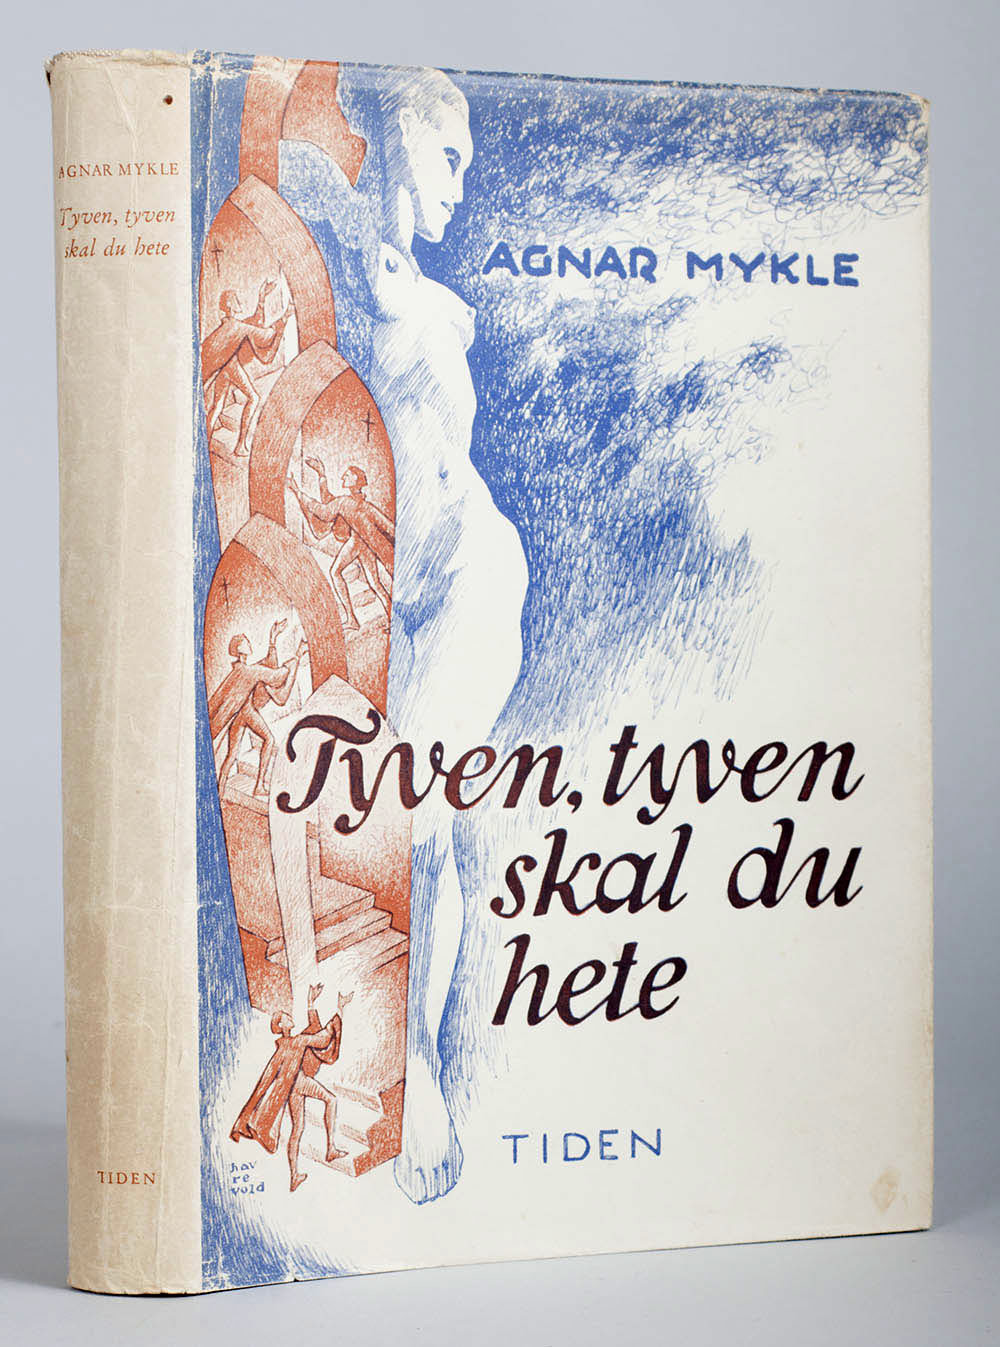 - 3-4. Tyven, tyven skal du hete. Oslo. Tiden Norsk Forlag. 1951. 251 sider.